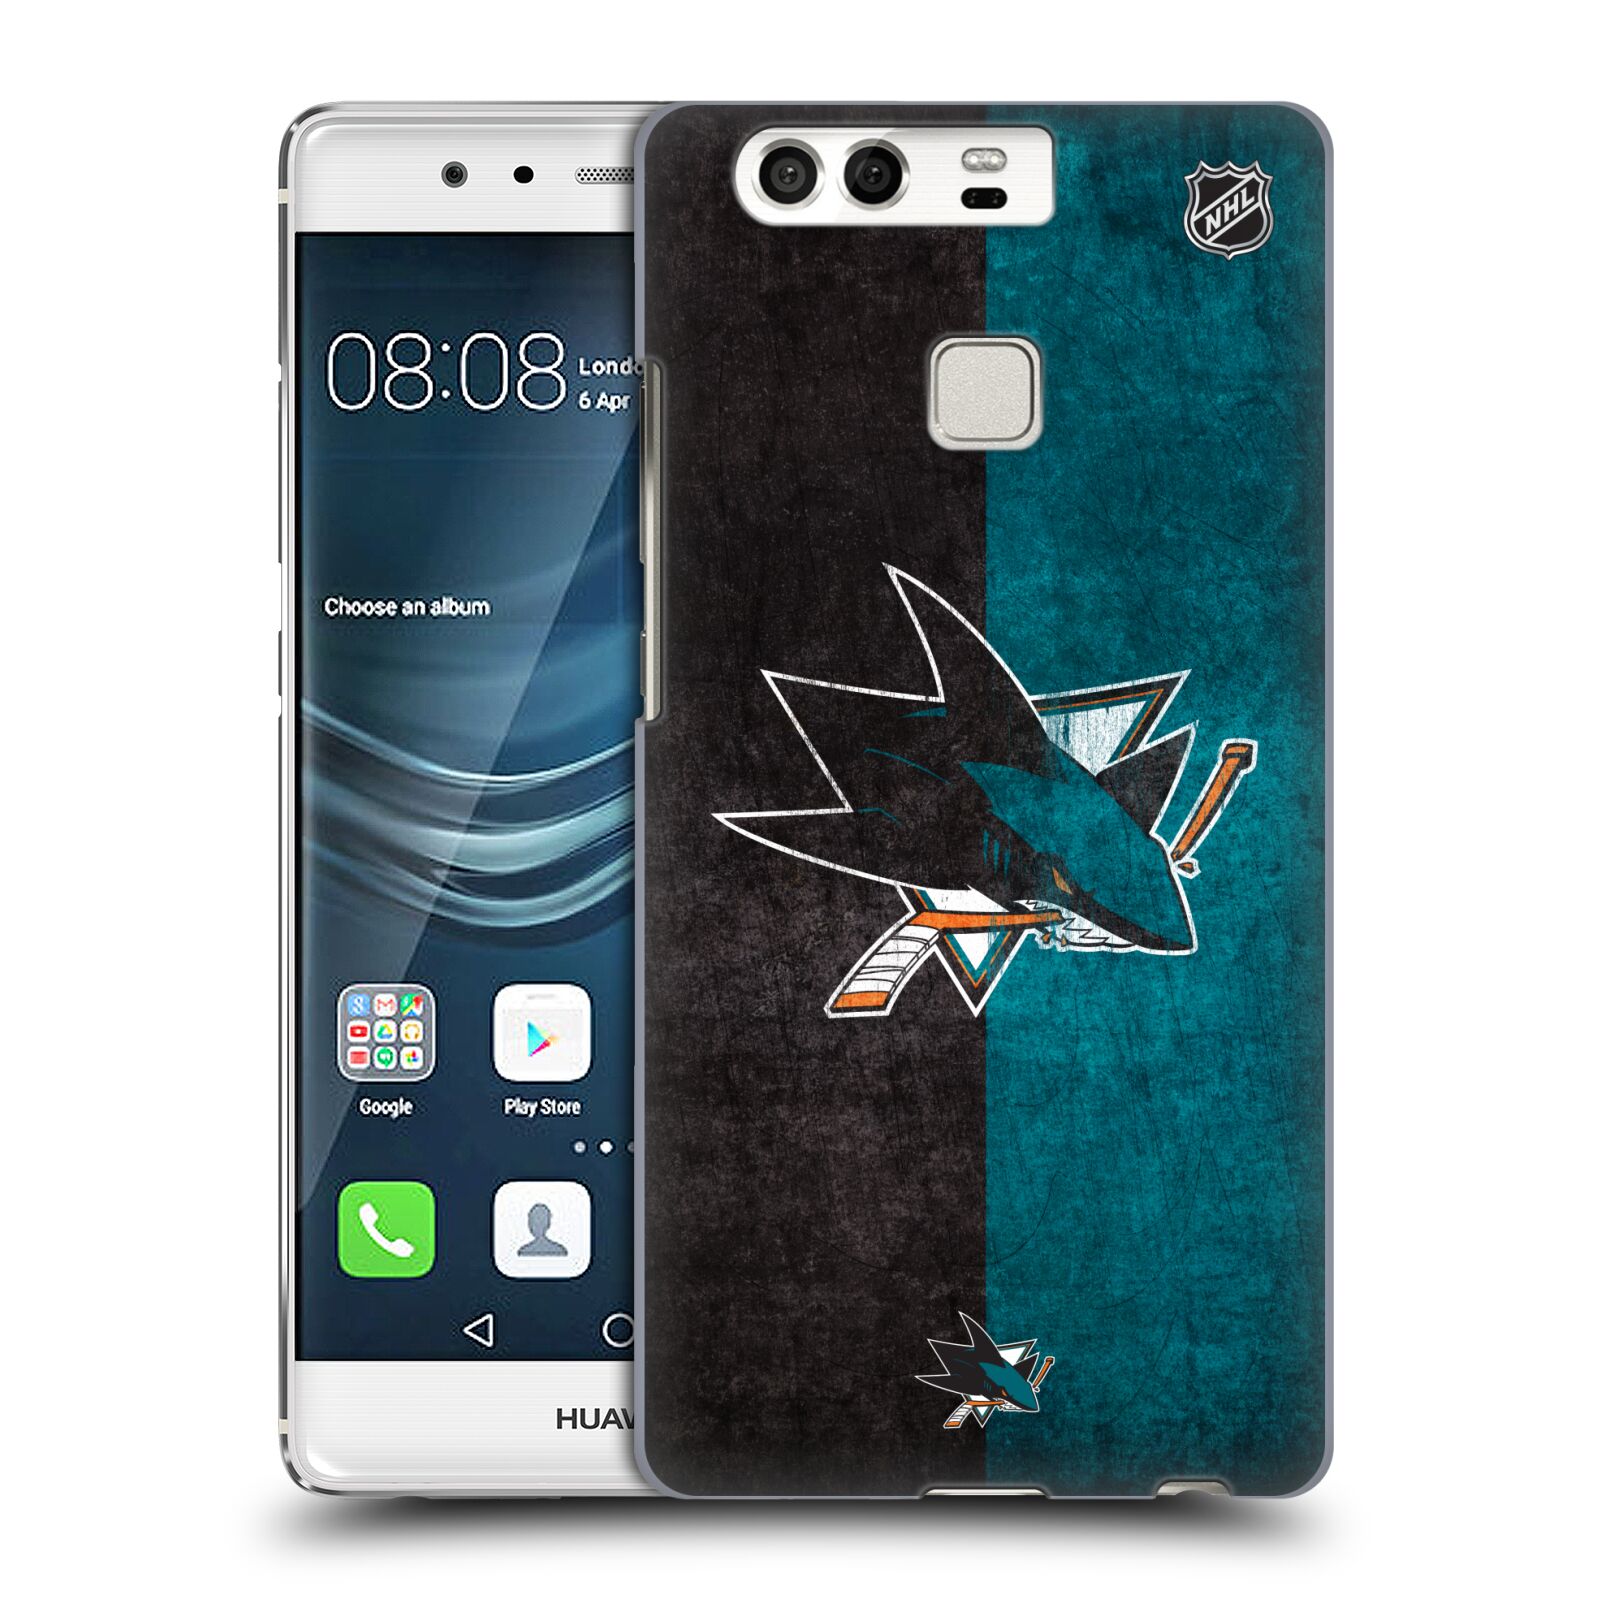 Pouzdro na mobil Huawei P9 / P9 DUAL SIM - HEAD CASE - Hokej NHL - San Jose Sharks - Znak dva pruhy